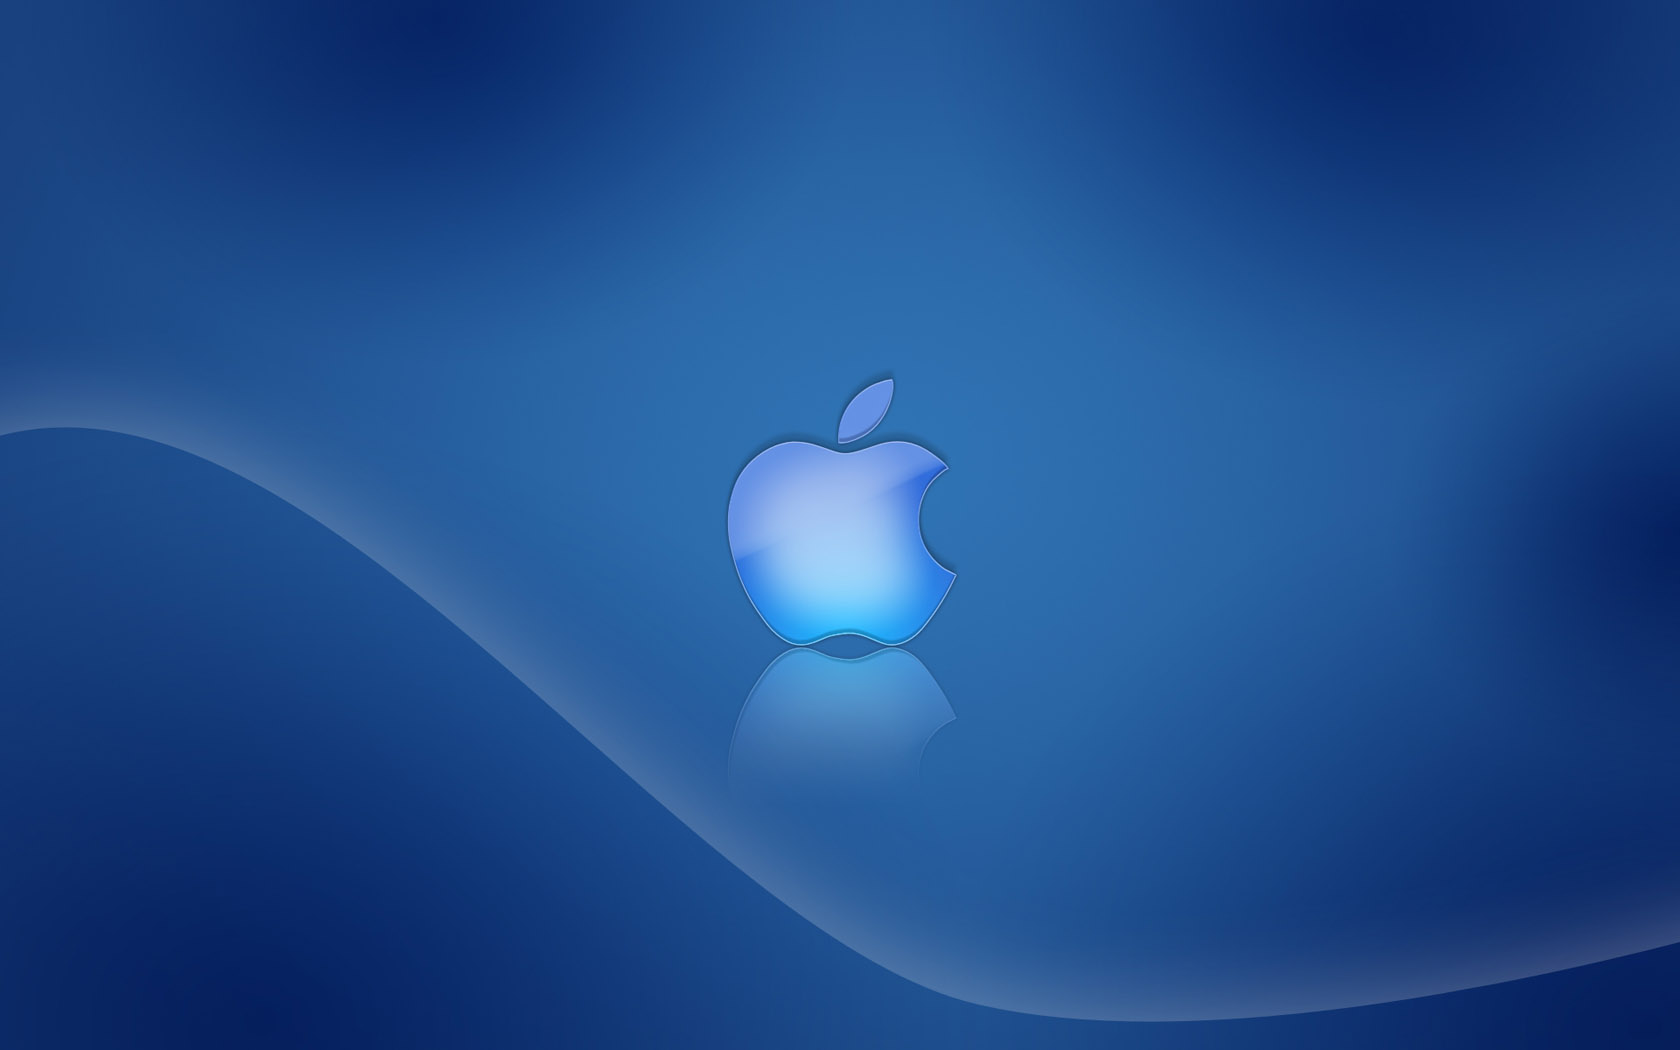 苹果 iOS 14/iPadOS 14 全新壁纸11张，完整原图下载 – Edge插件网